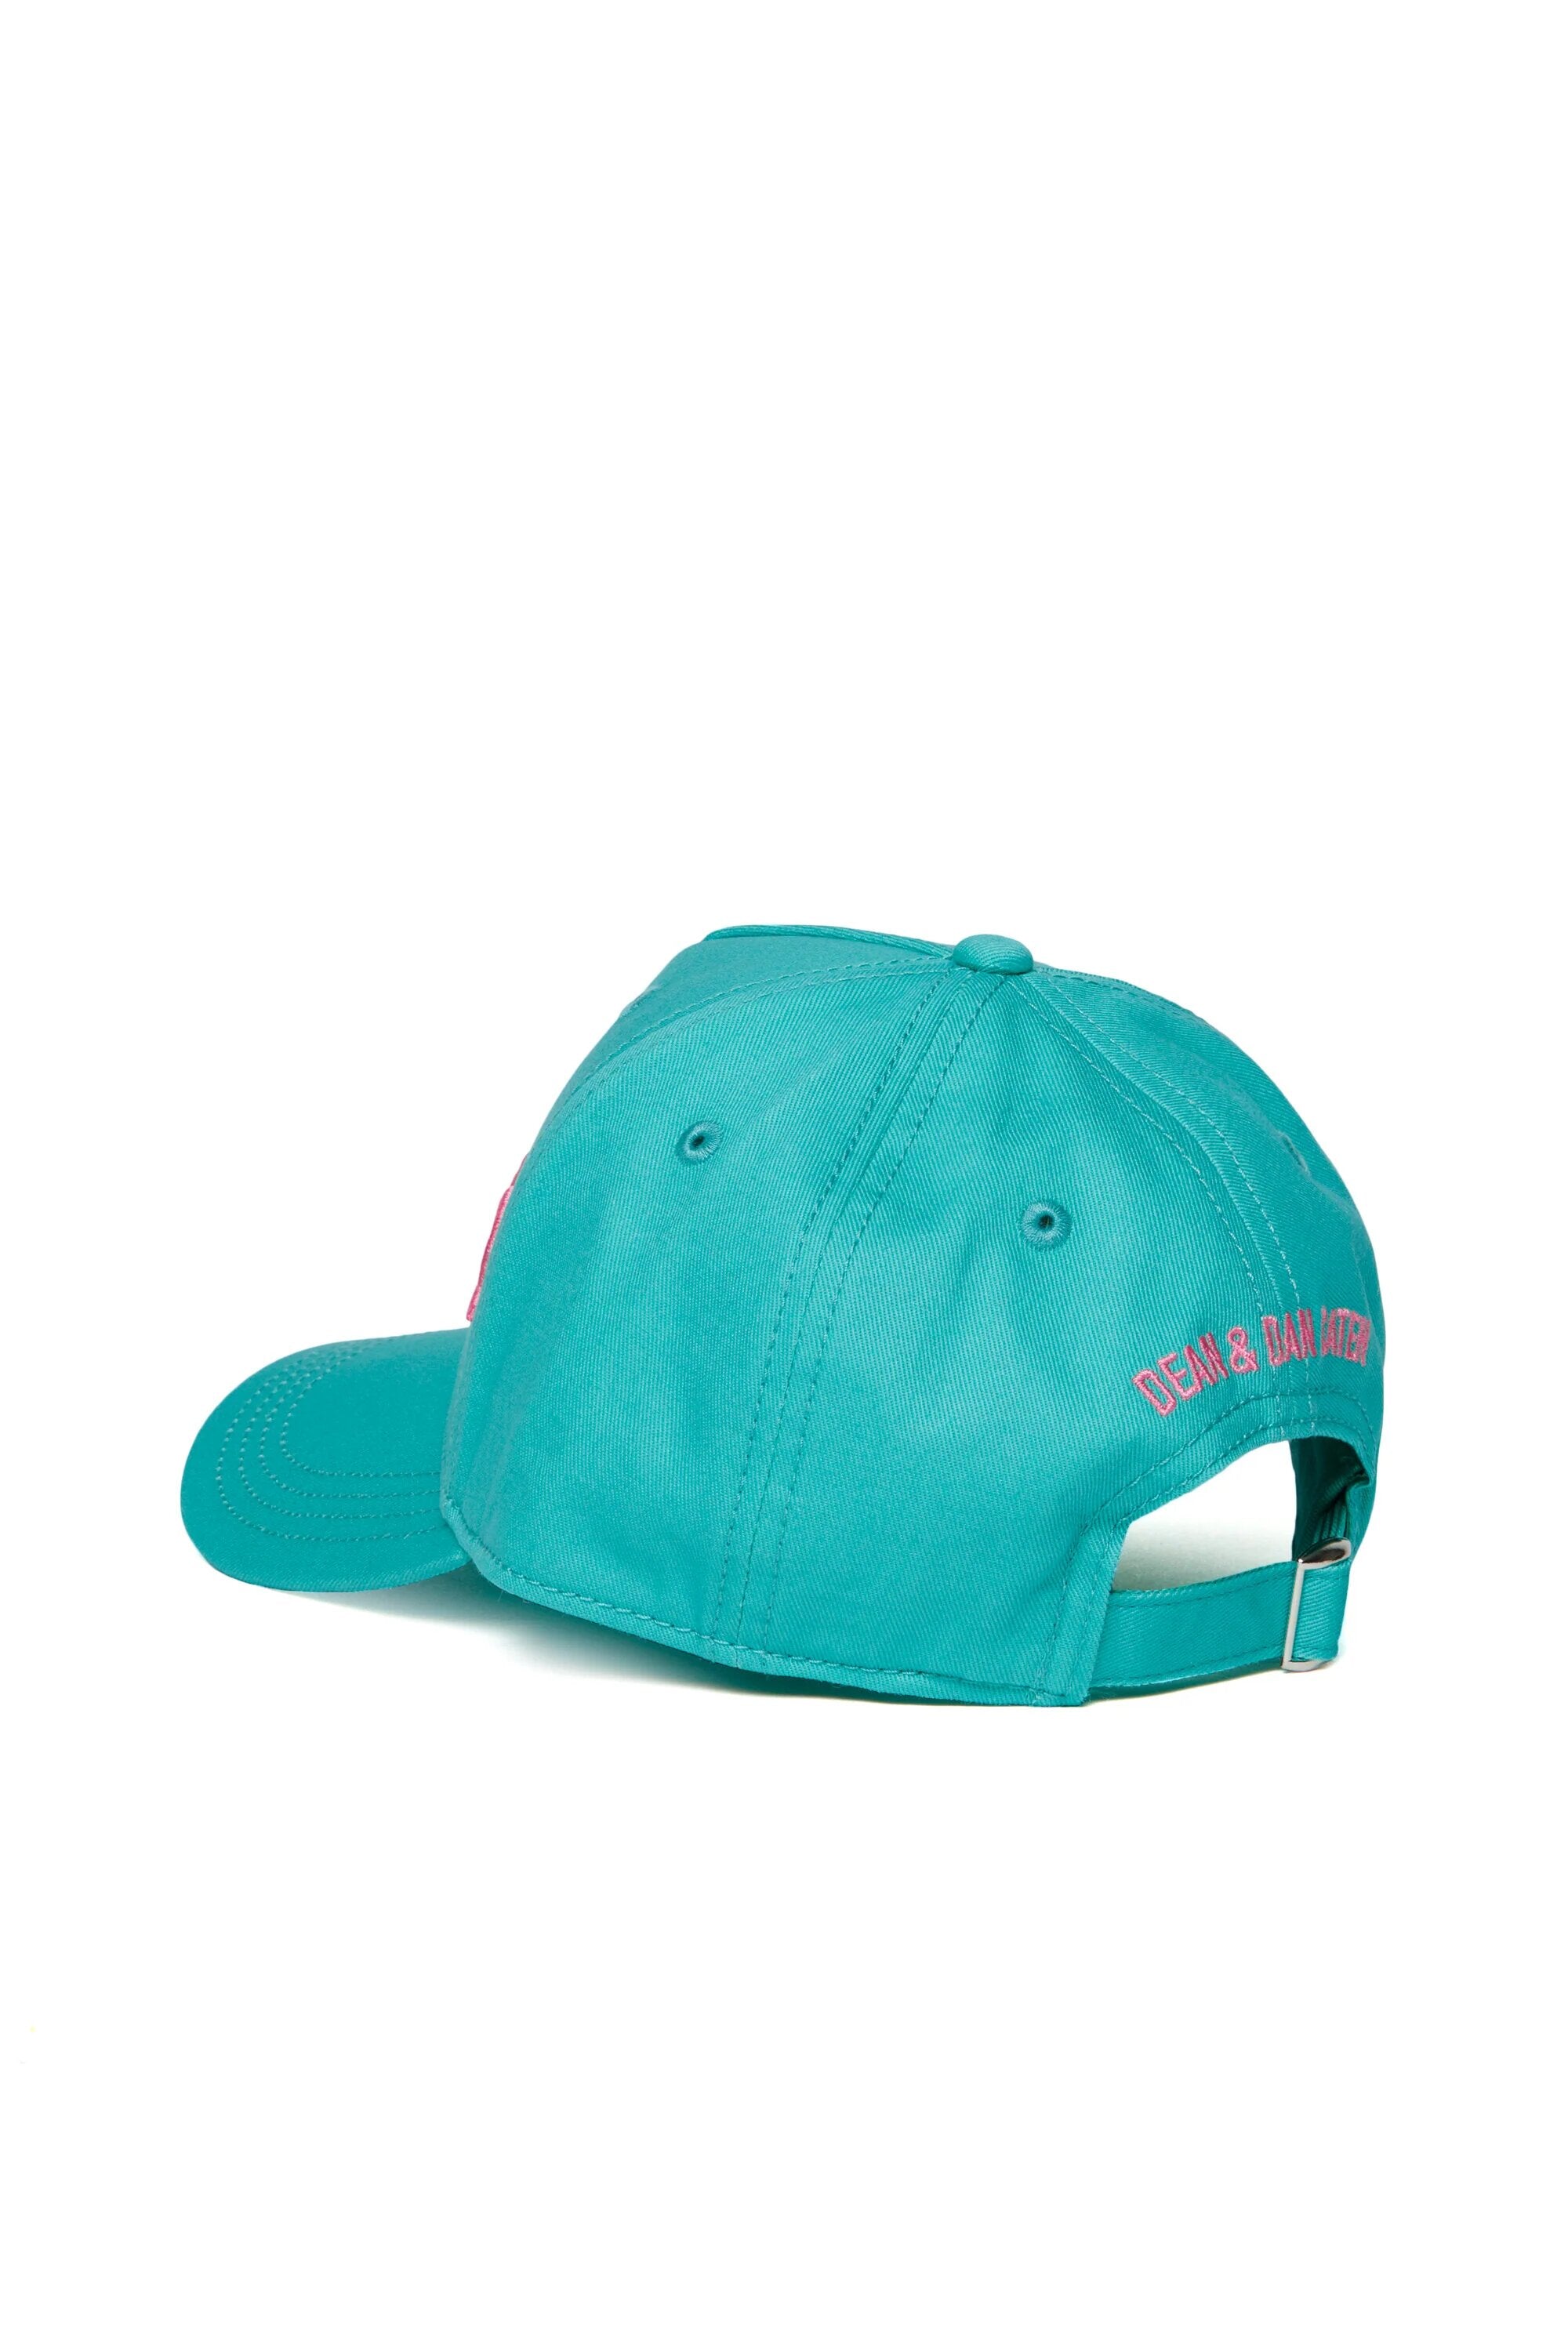 DSQUARED2-Cappello Unisex Bambino Logo-Azzurro